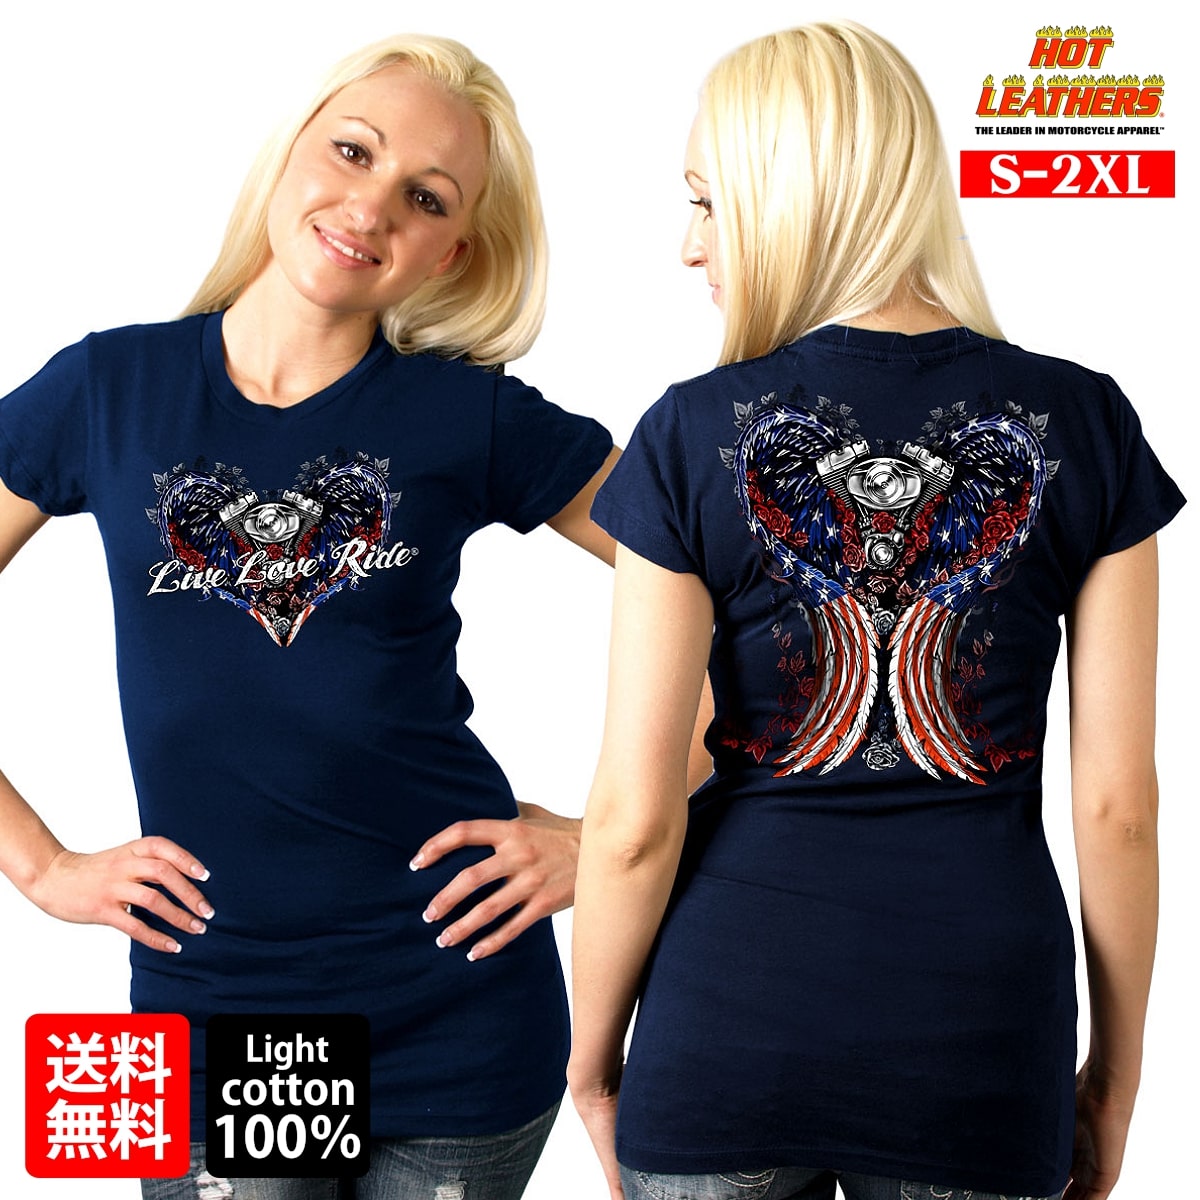 【楽天市場】【送料無料!】日本未発売! セール価格! 米国直輸入! ホットレザー [Angel Wings Ladies T-Shirt